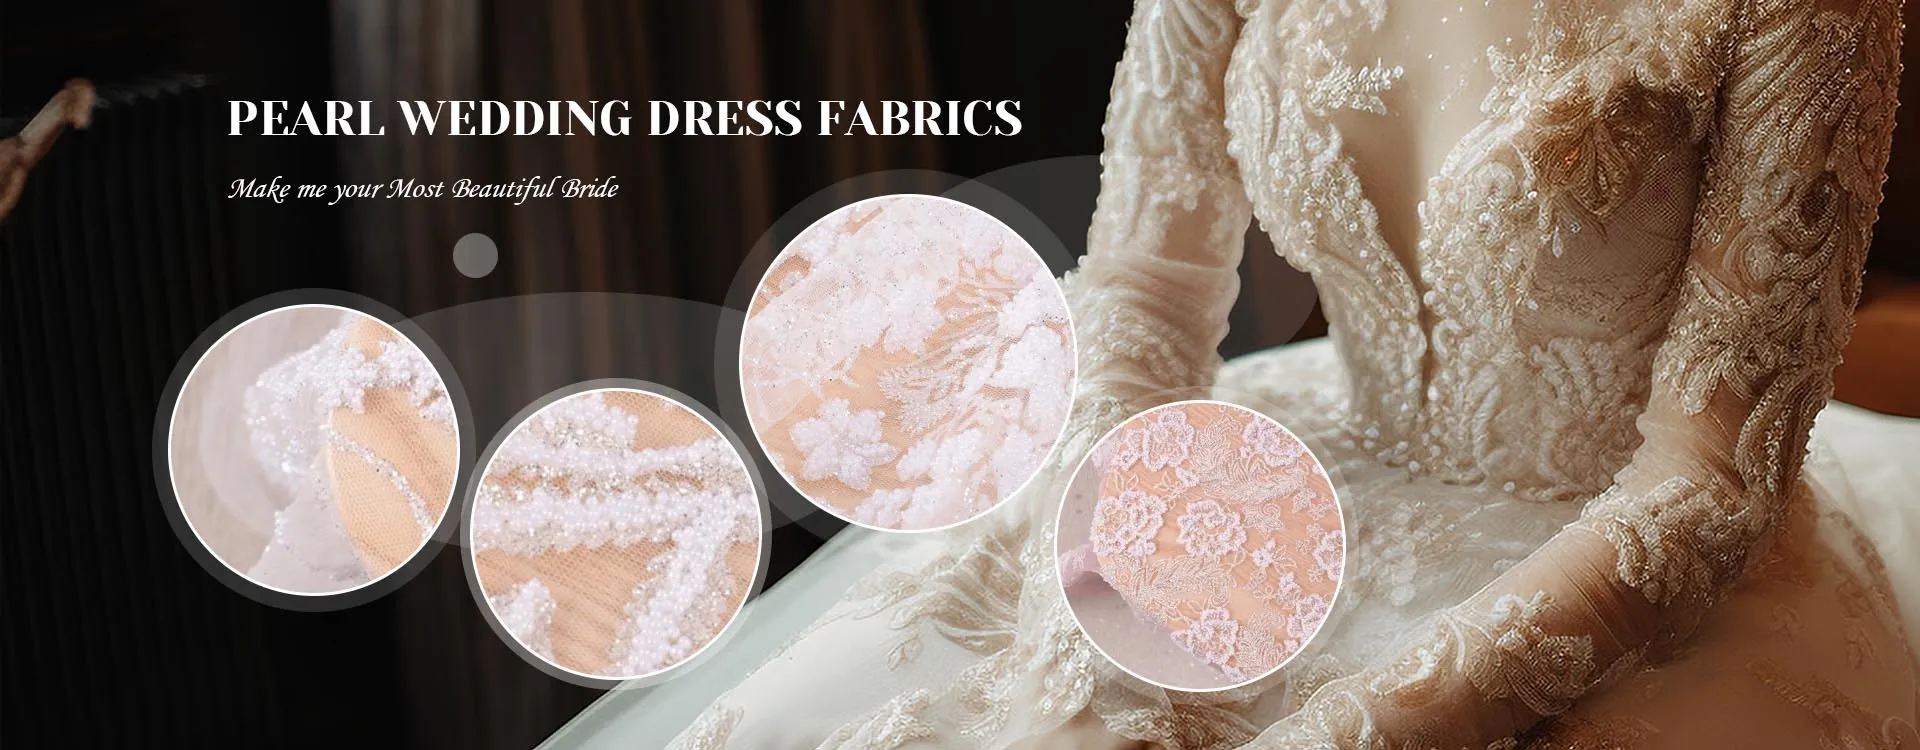 Výrobcovia tkanín na perlové svadobné šaty v Číne